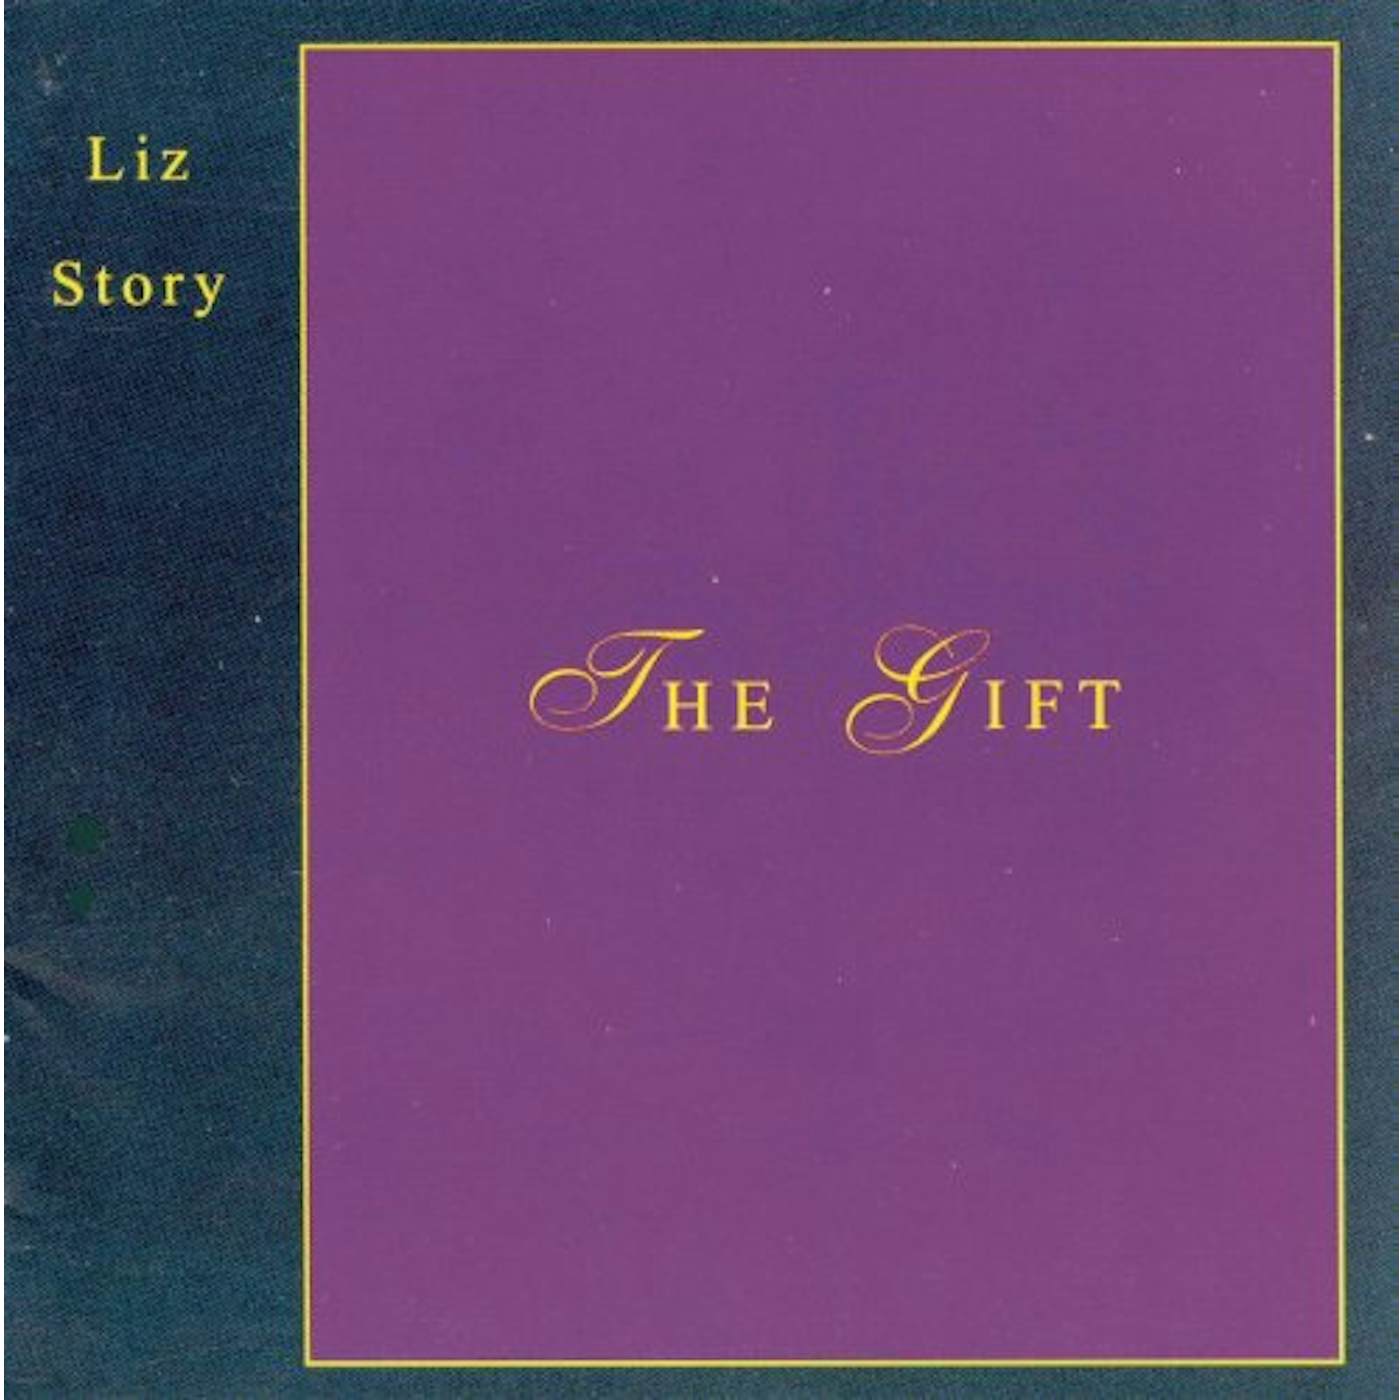 Liz Story GIFT CD